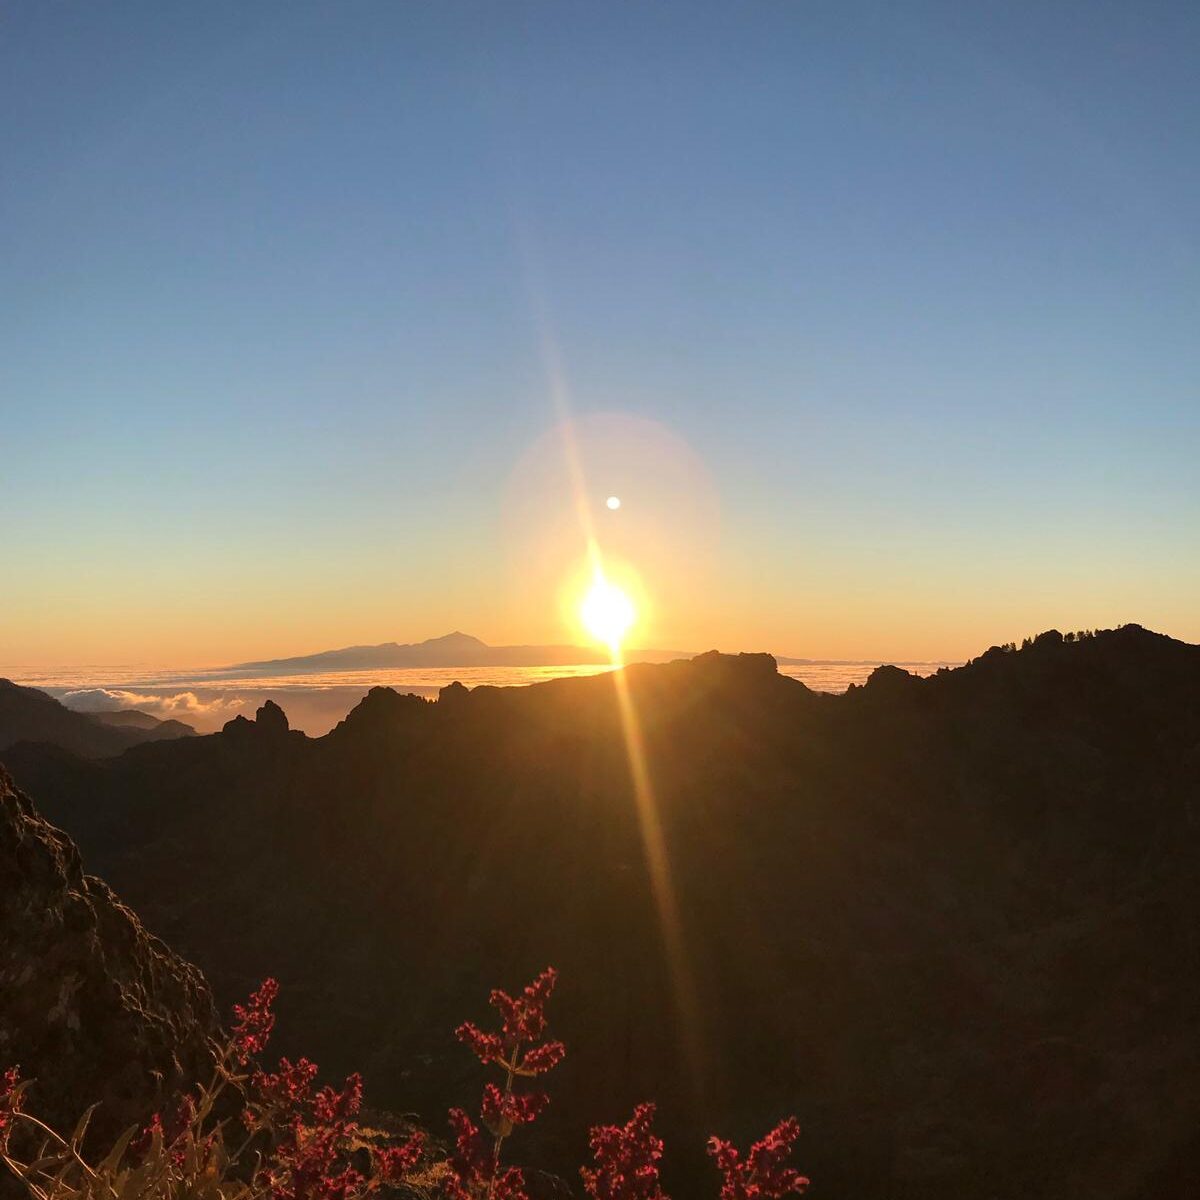 Paysage: méditation au coucher de soleil sur les montagnes
La randonnée : méditation du corps et de l'esprit